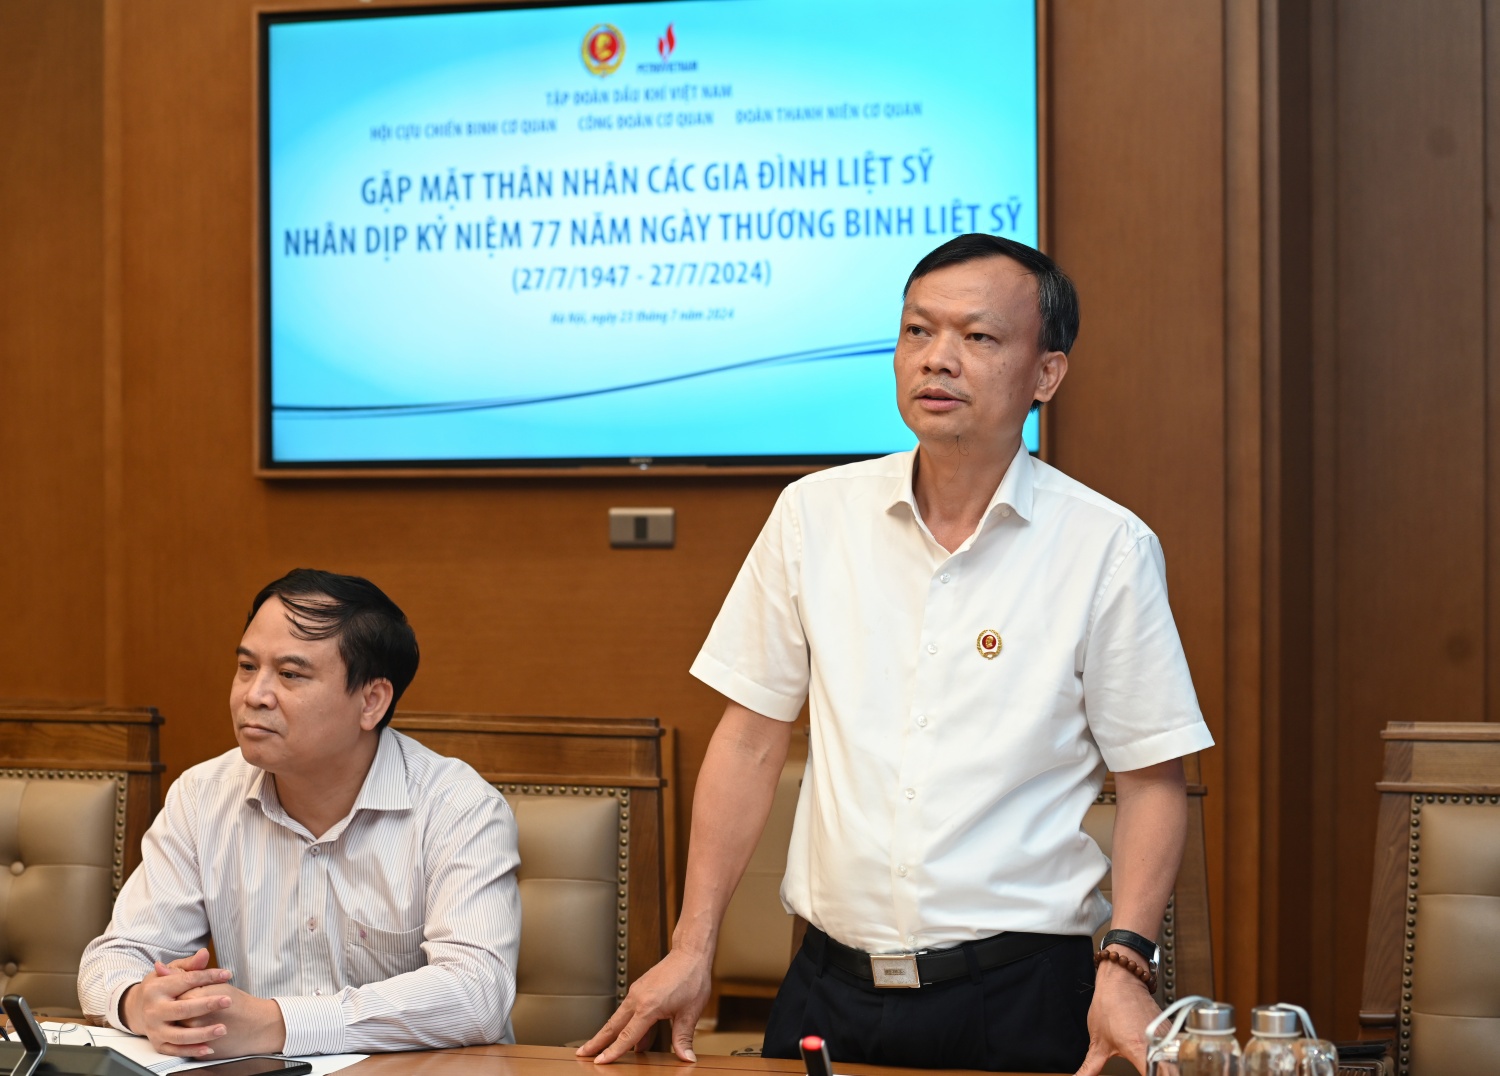 đồng chí Lê Quang Toán - Phó Chủ tịch thường trực Hội CCB Tập đoàn phát biểu tại buổi gặp mặt